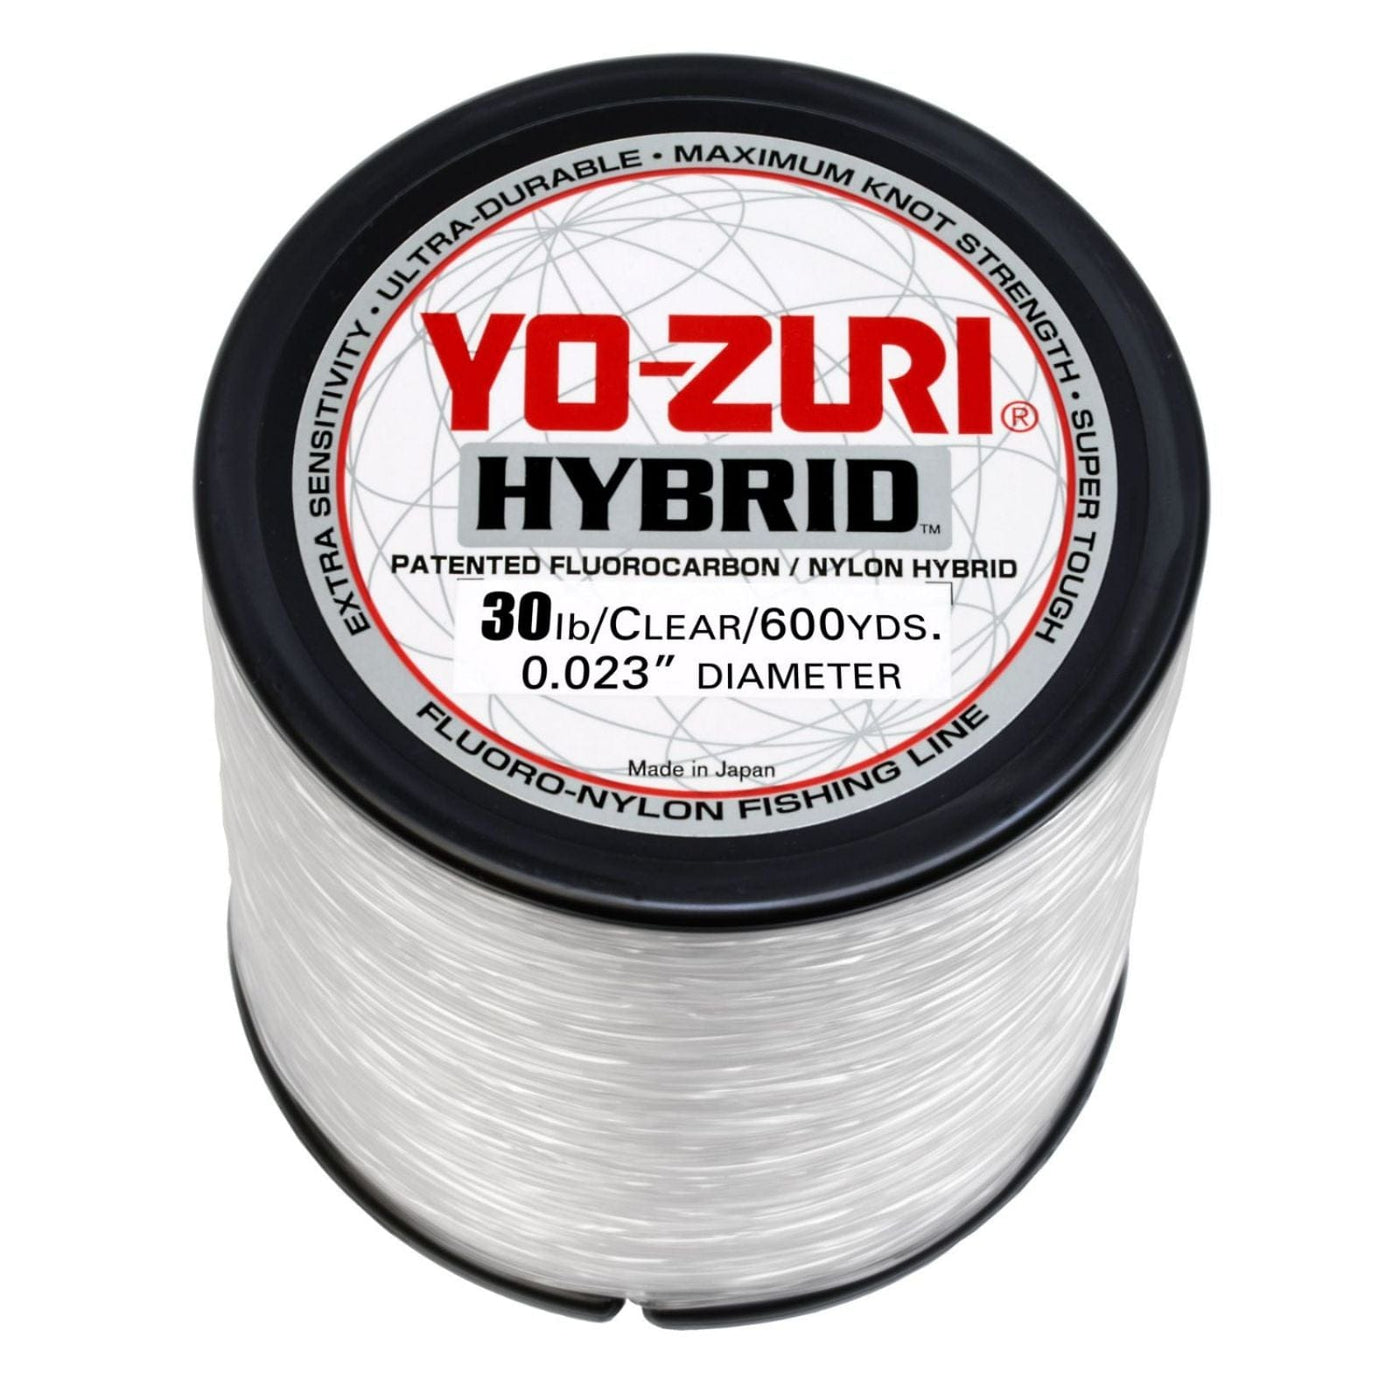 Yo-Zuri Yo-Zuri Hybrid Clear Line 600YD Spool in 30 LB Fishing